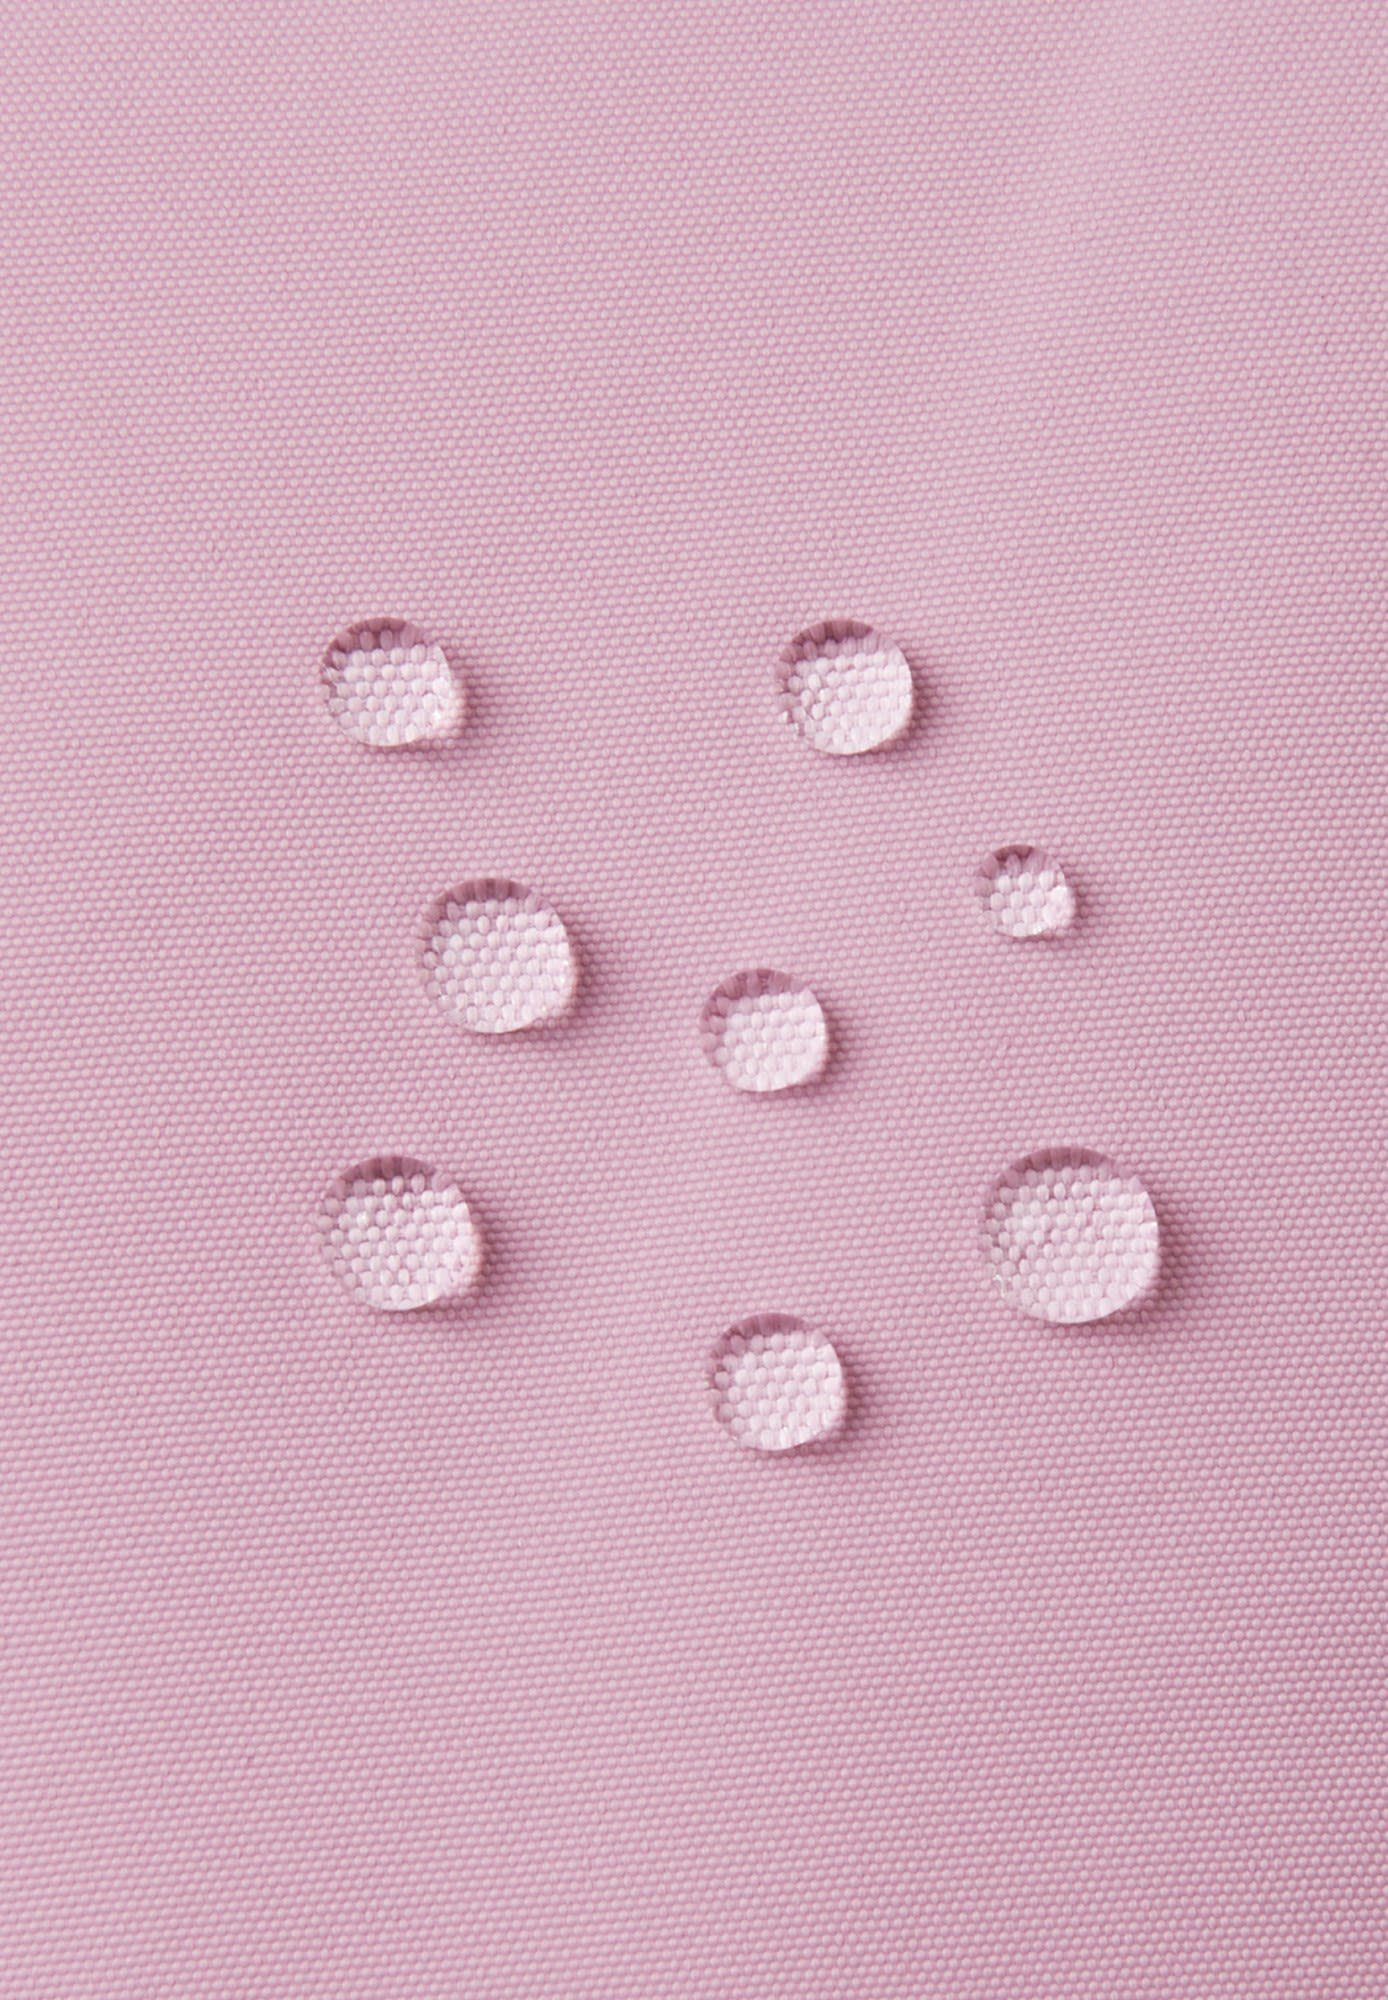 Reima Grey reima Accessoires Fleecehandschuhe Pink Kinder Mittens Toddlers Tepas